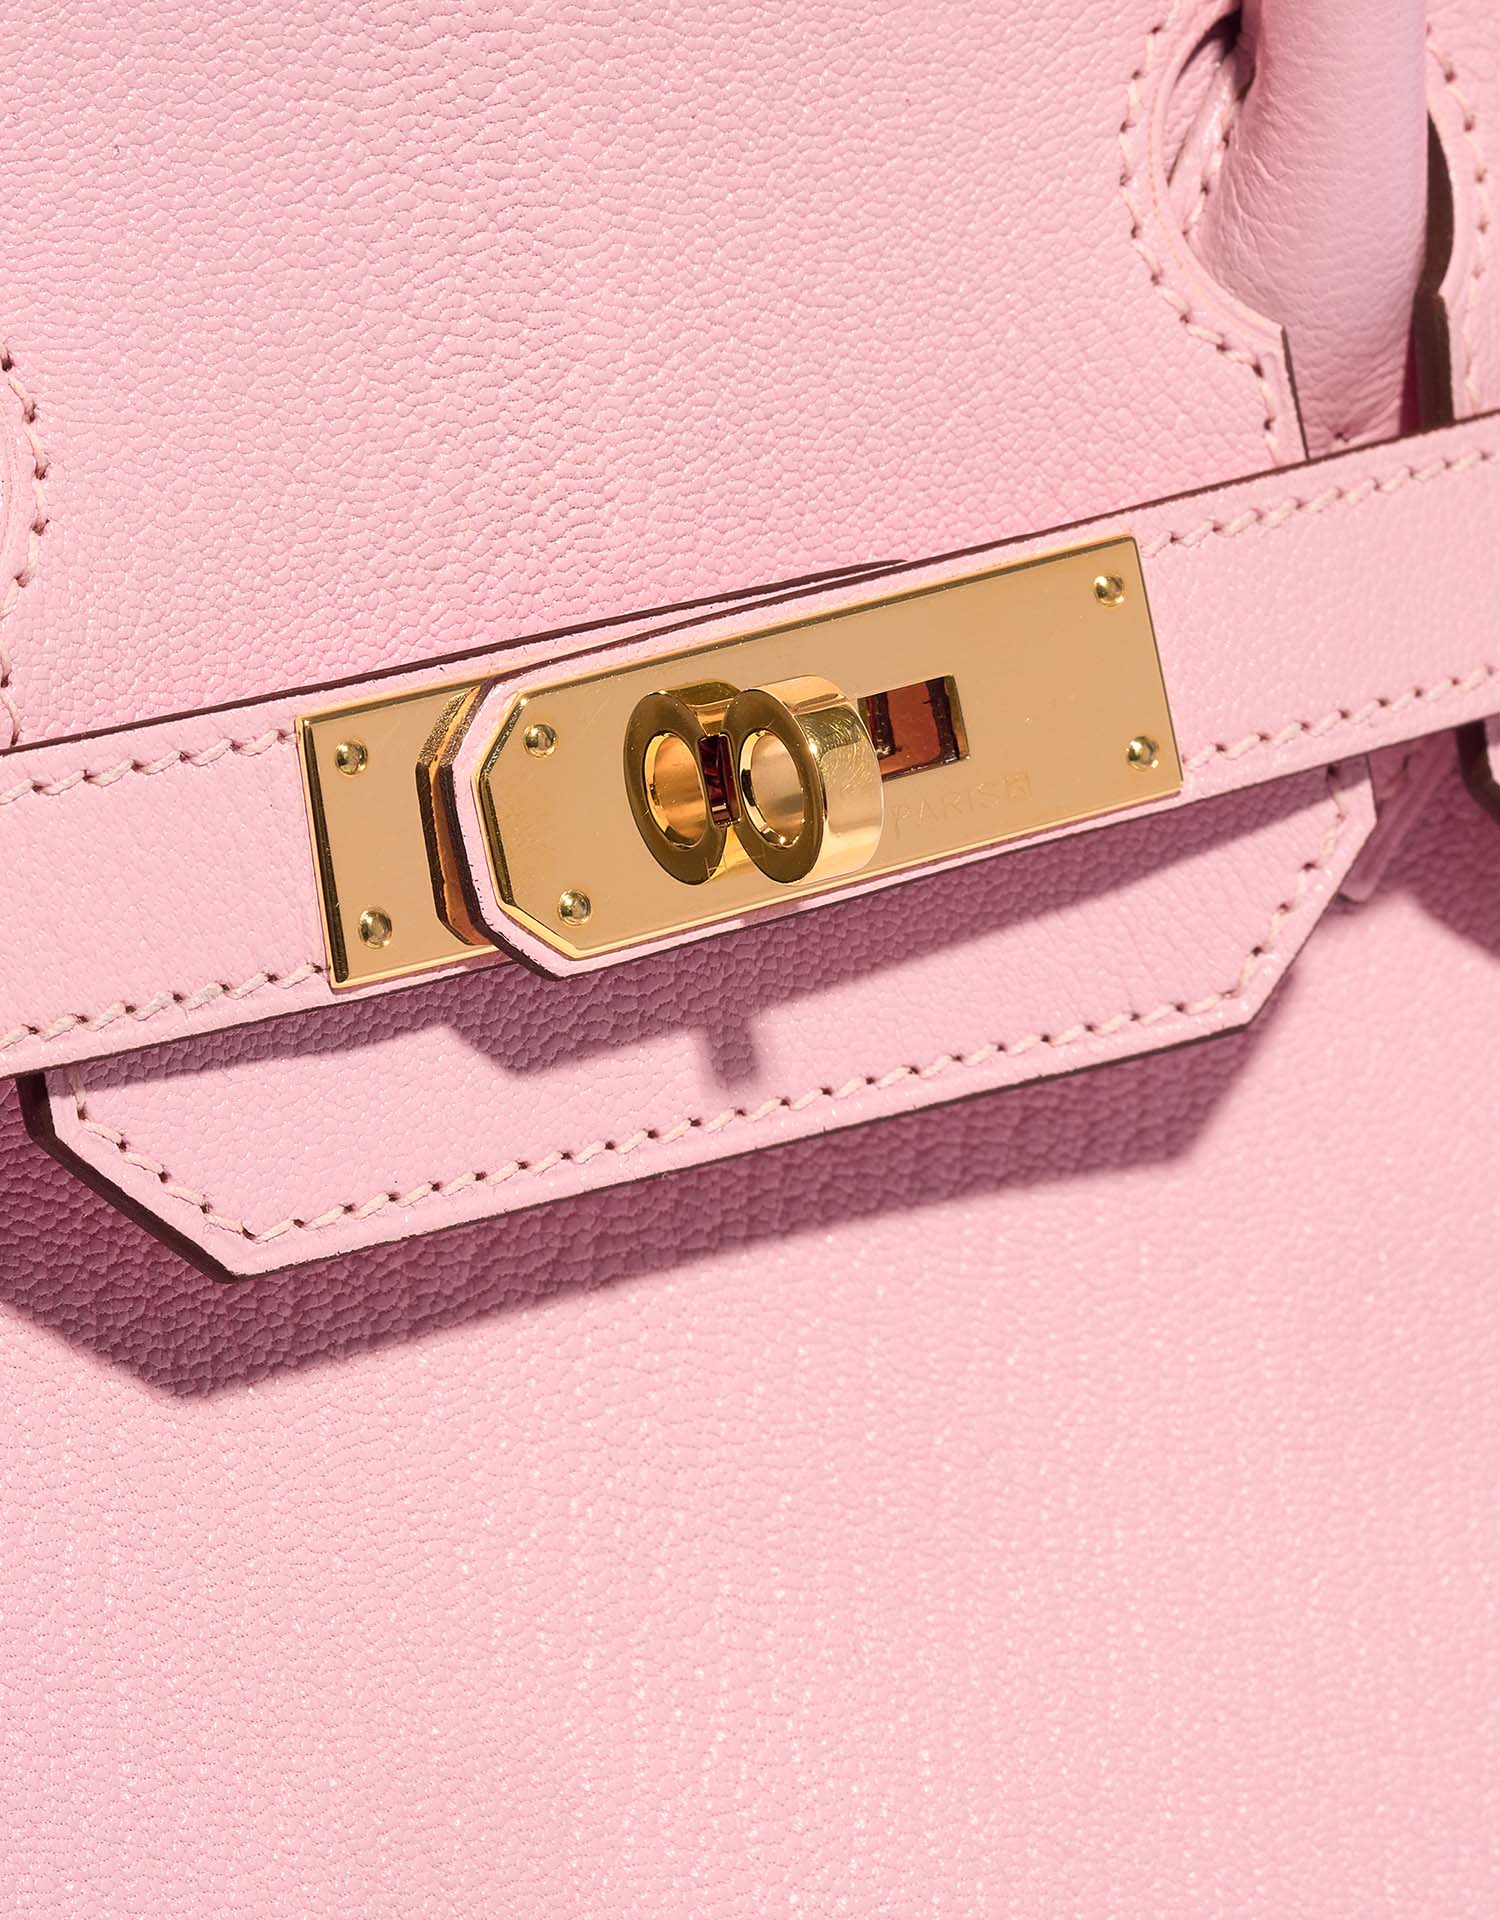 Hermès Birkin 30 roseSakura Verschluss-System | Verkaufen Sie Ihre Designer-Tasche auf Saclab.com